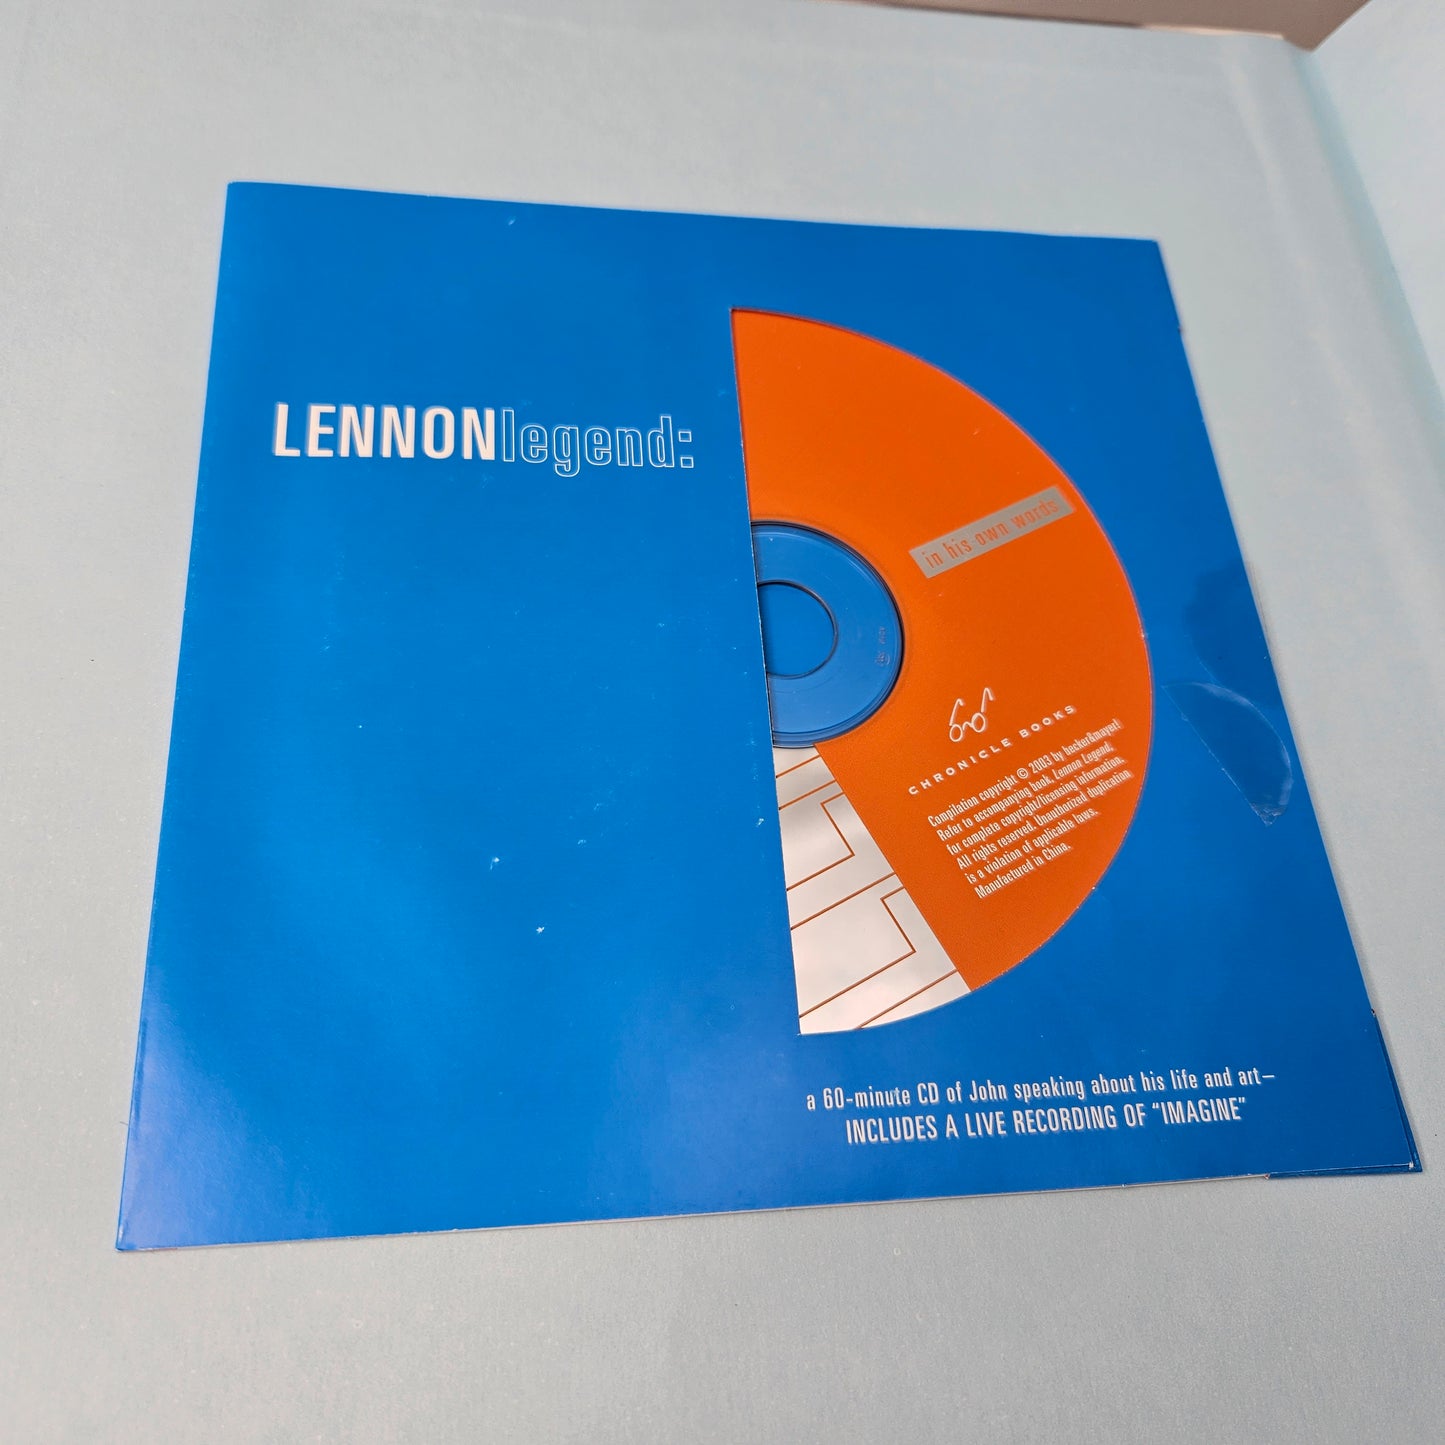 James Henke "Lennon Legend" 2003